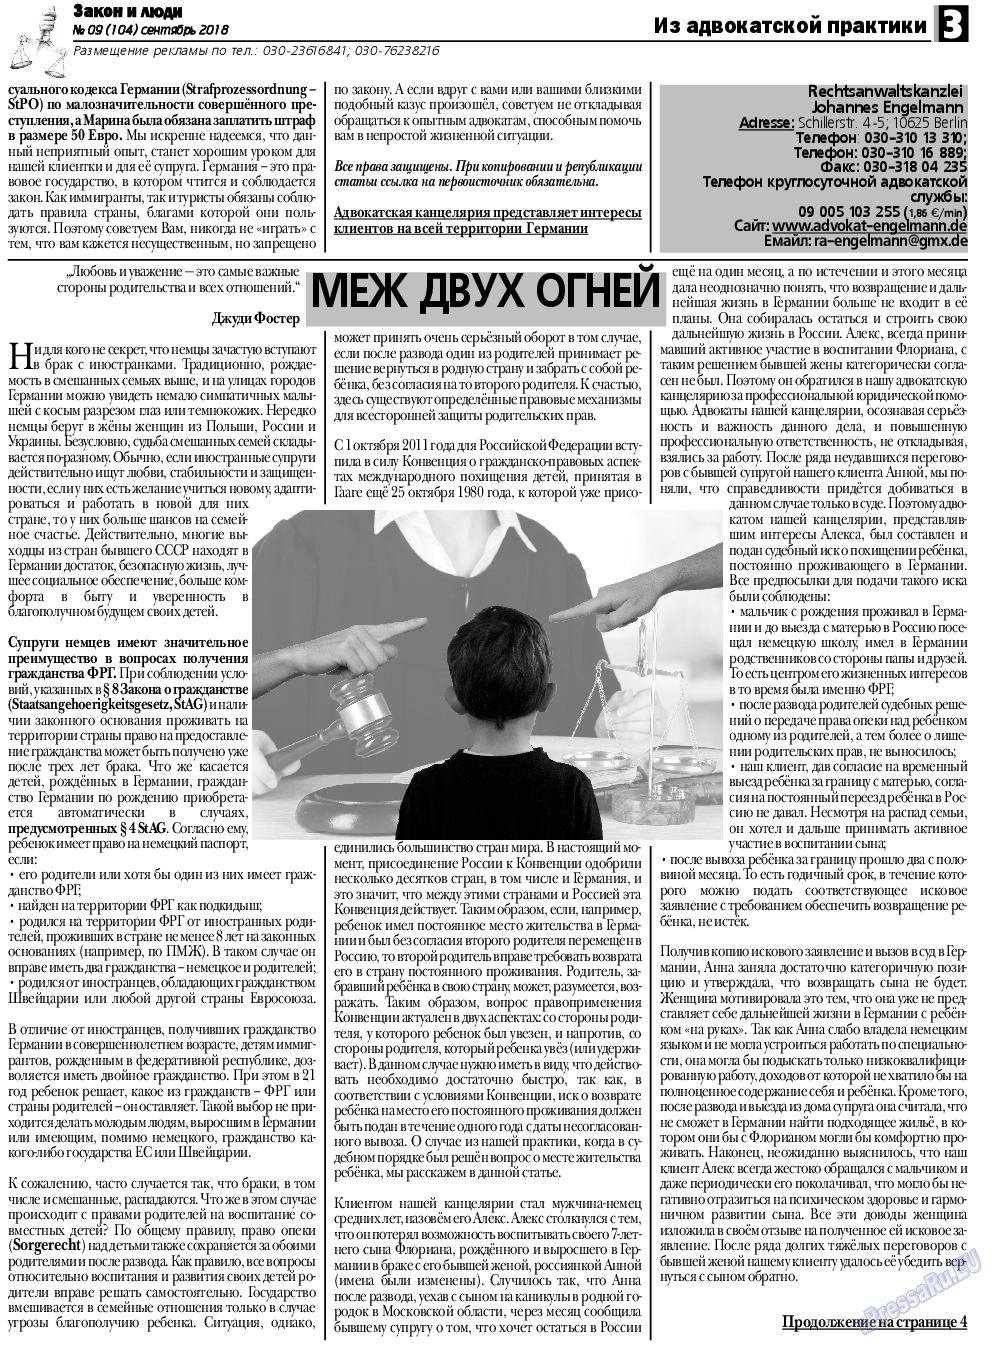 Закон и люди, газета. 2018 №9 стр.3